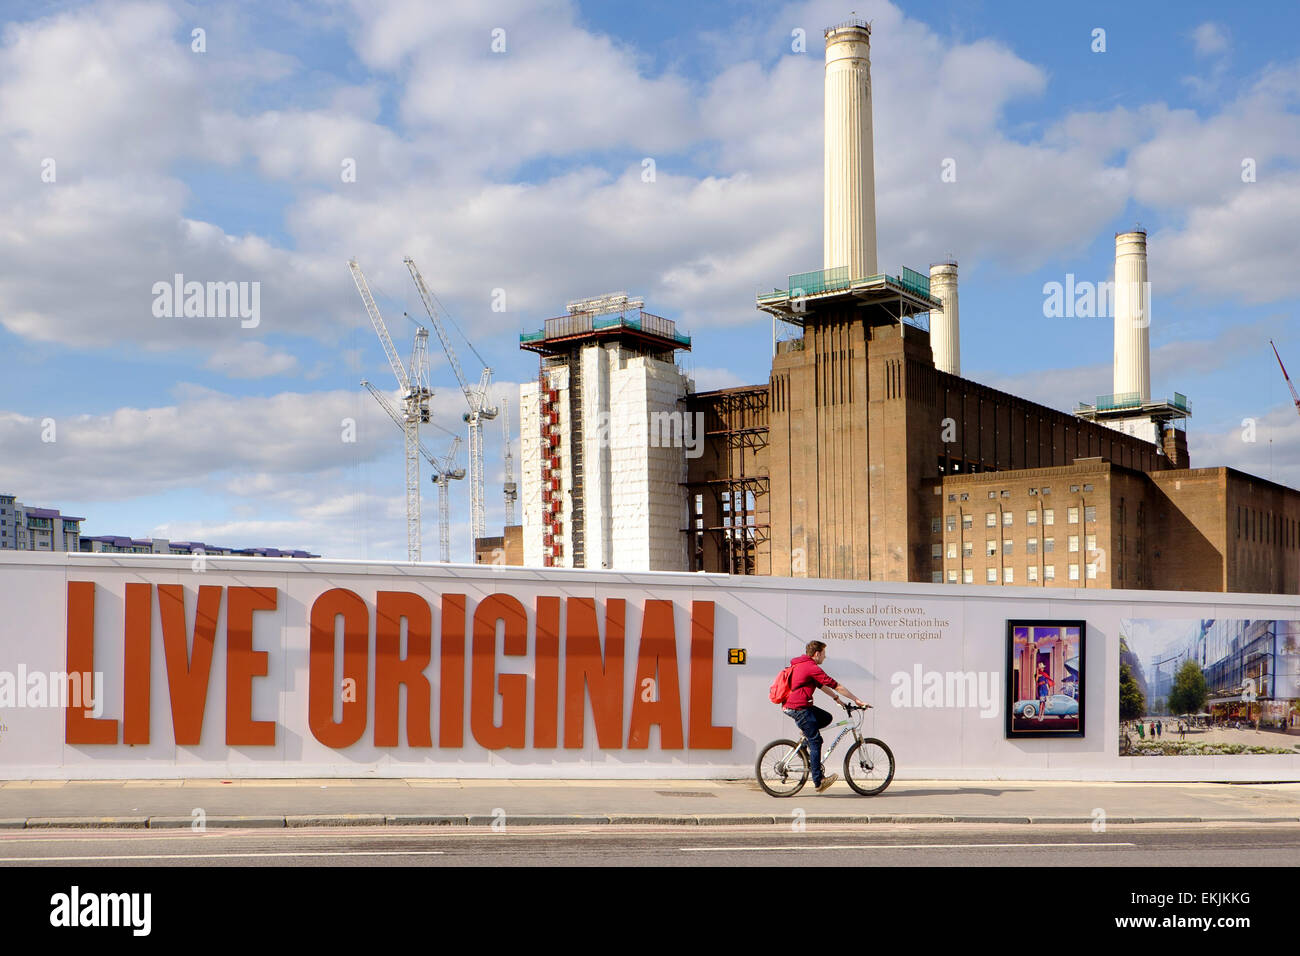 27 Marzo 2015 - Londra: Battersea Power Station in fase di riqualificazione come parte del generale Nine Elms lo schema di sviluppo Foto Stock